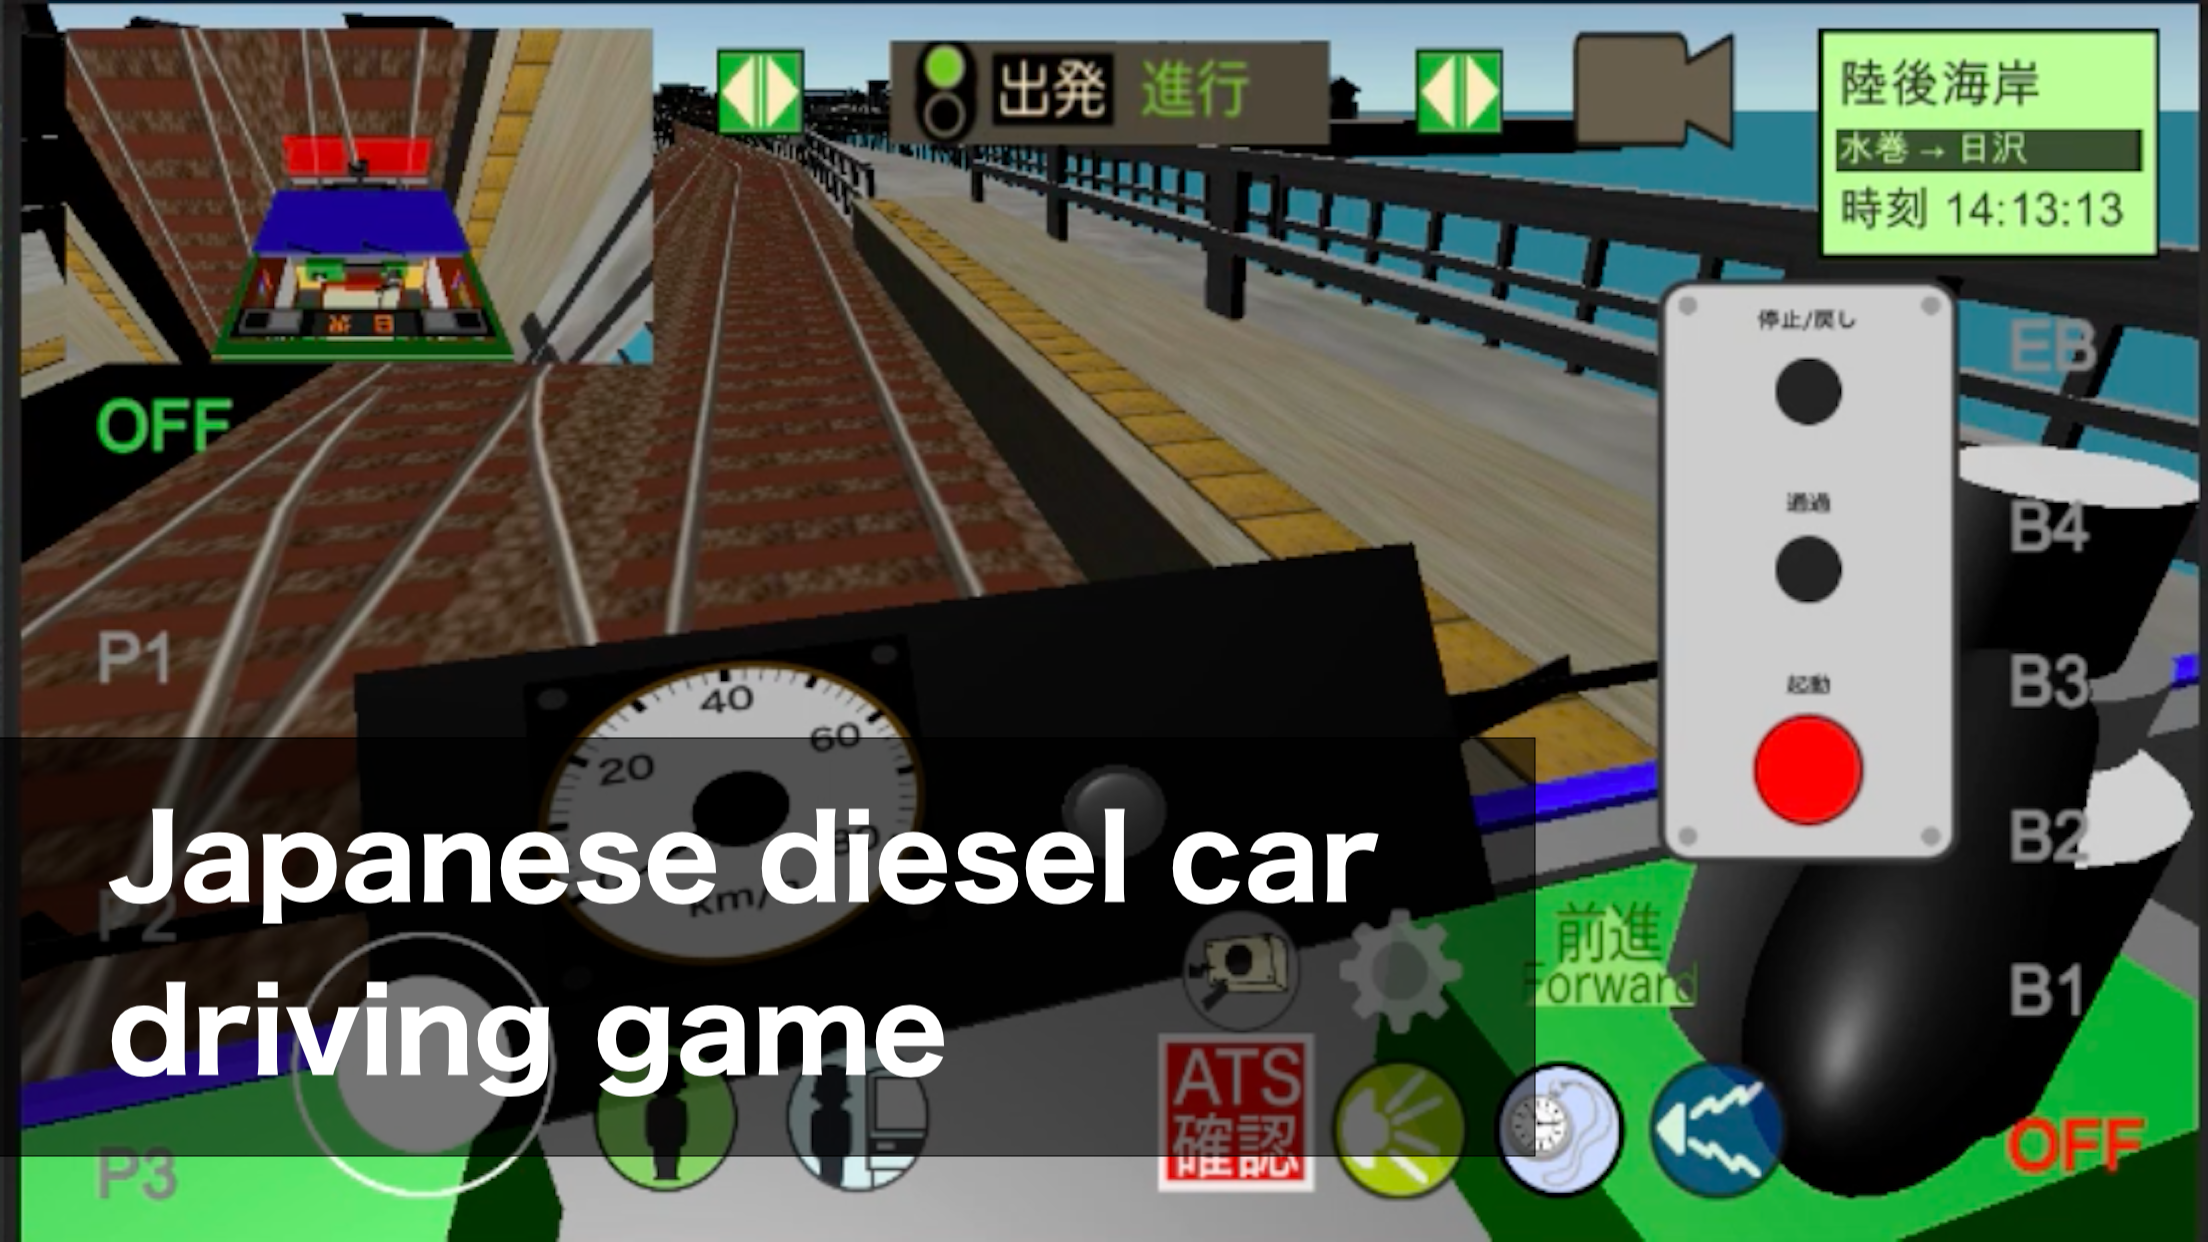 Screenshot 1 of Симулятор вождения японского поезда 7.6